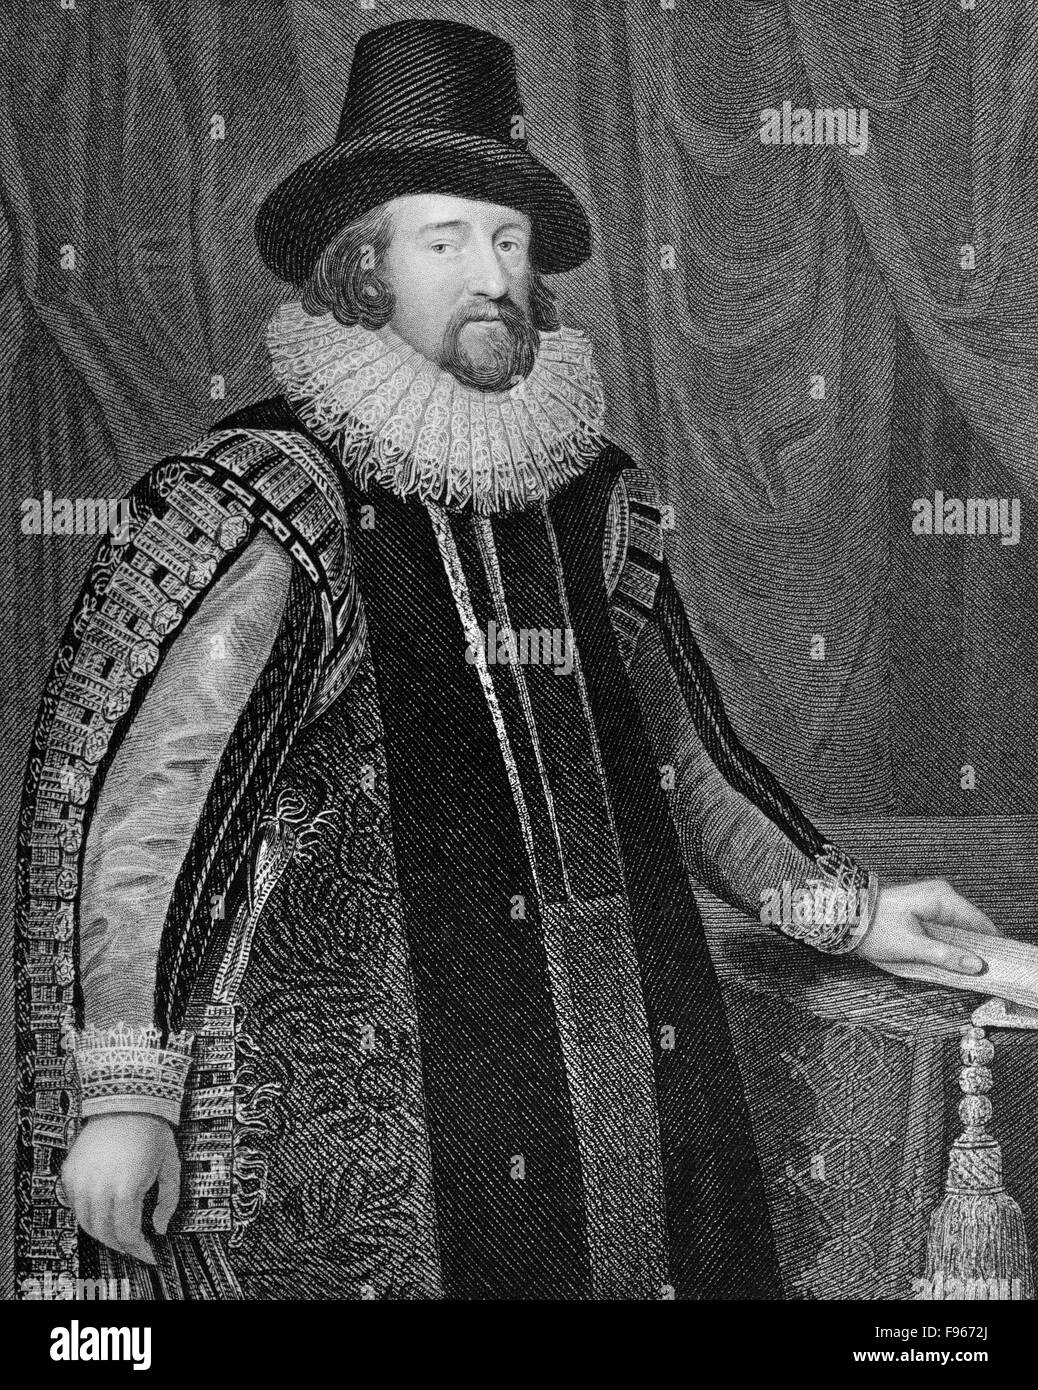 Francis Bacon ou le Baron de Verulam de Baco, 1561 - 1626, un philosophe anglais, homme d'État et scientifique, Banque D'Images